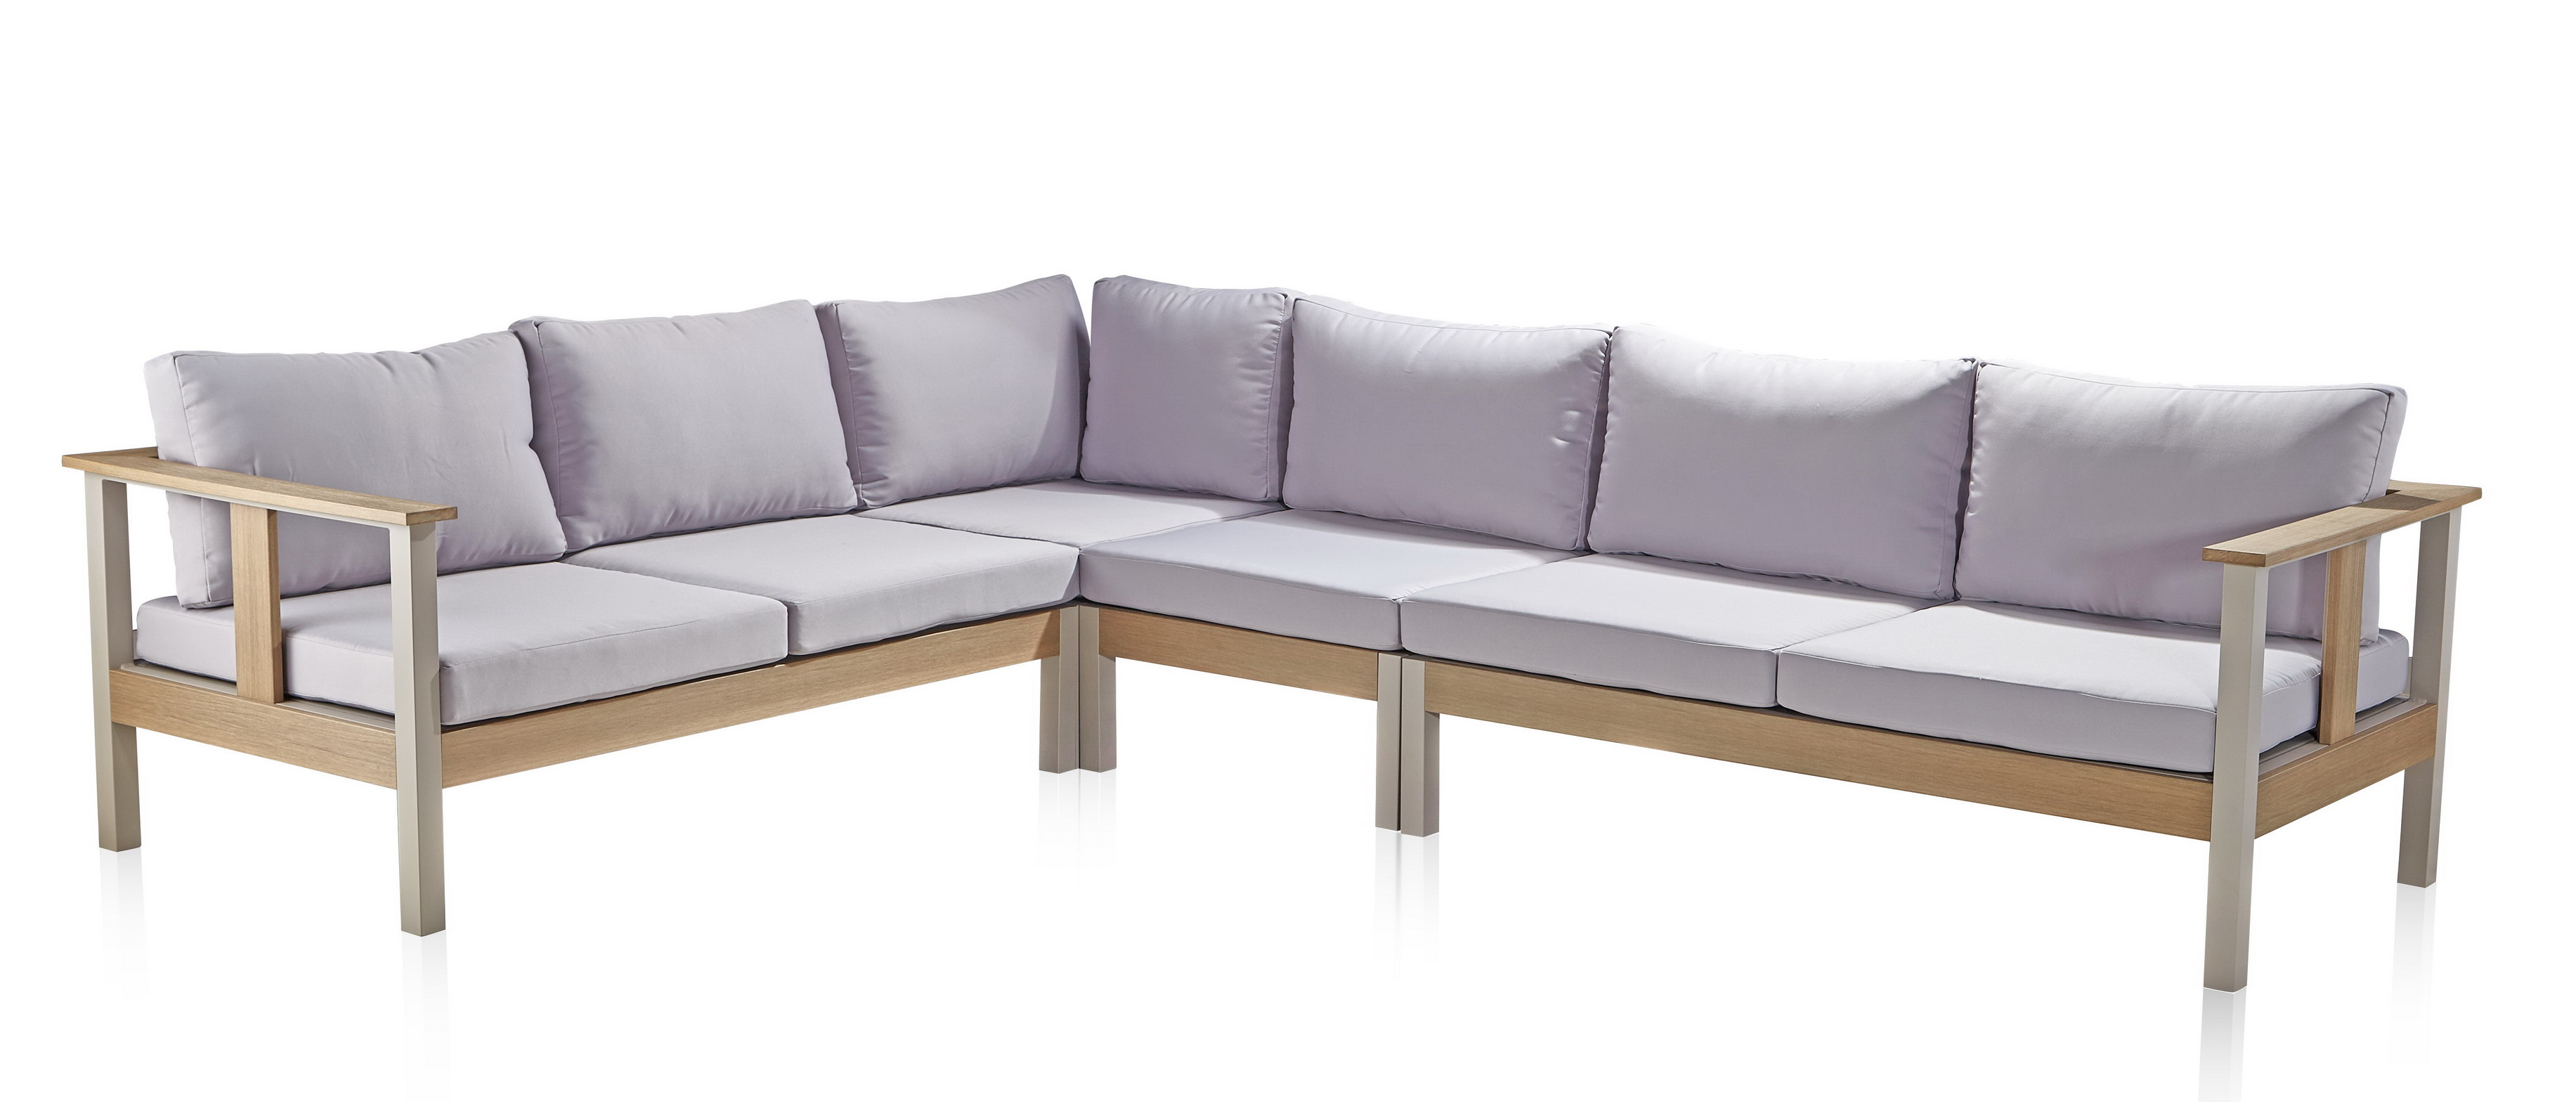 Low price Composite Patio Furniture Aluminum Outdoor Sofa supplier(s) china